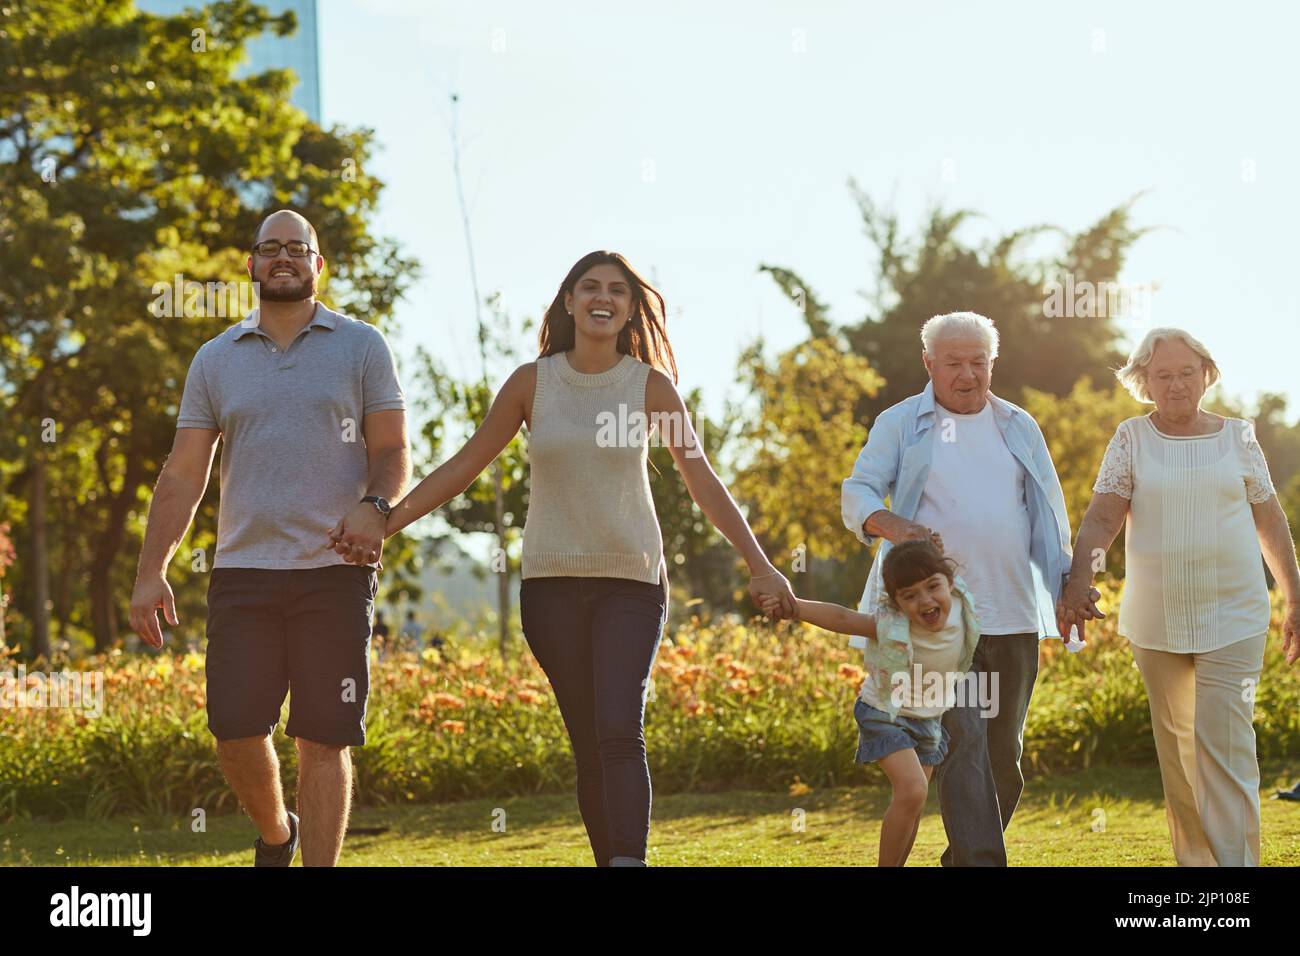 La famille, rien de plus vrai. Une famille heureuse allant pour une promenade ensemble dans le parc. Banque D'Images